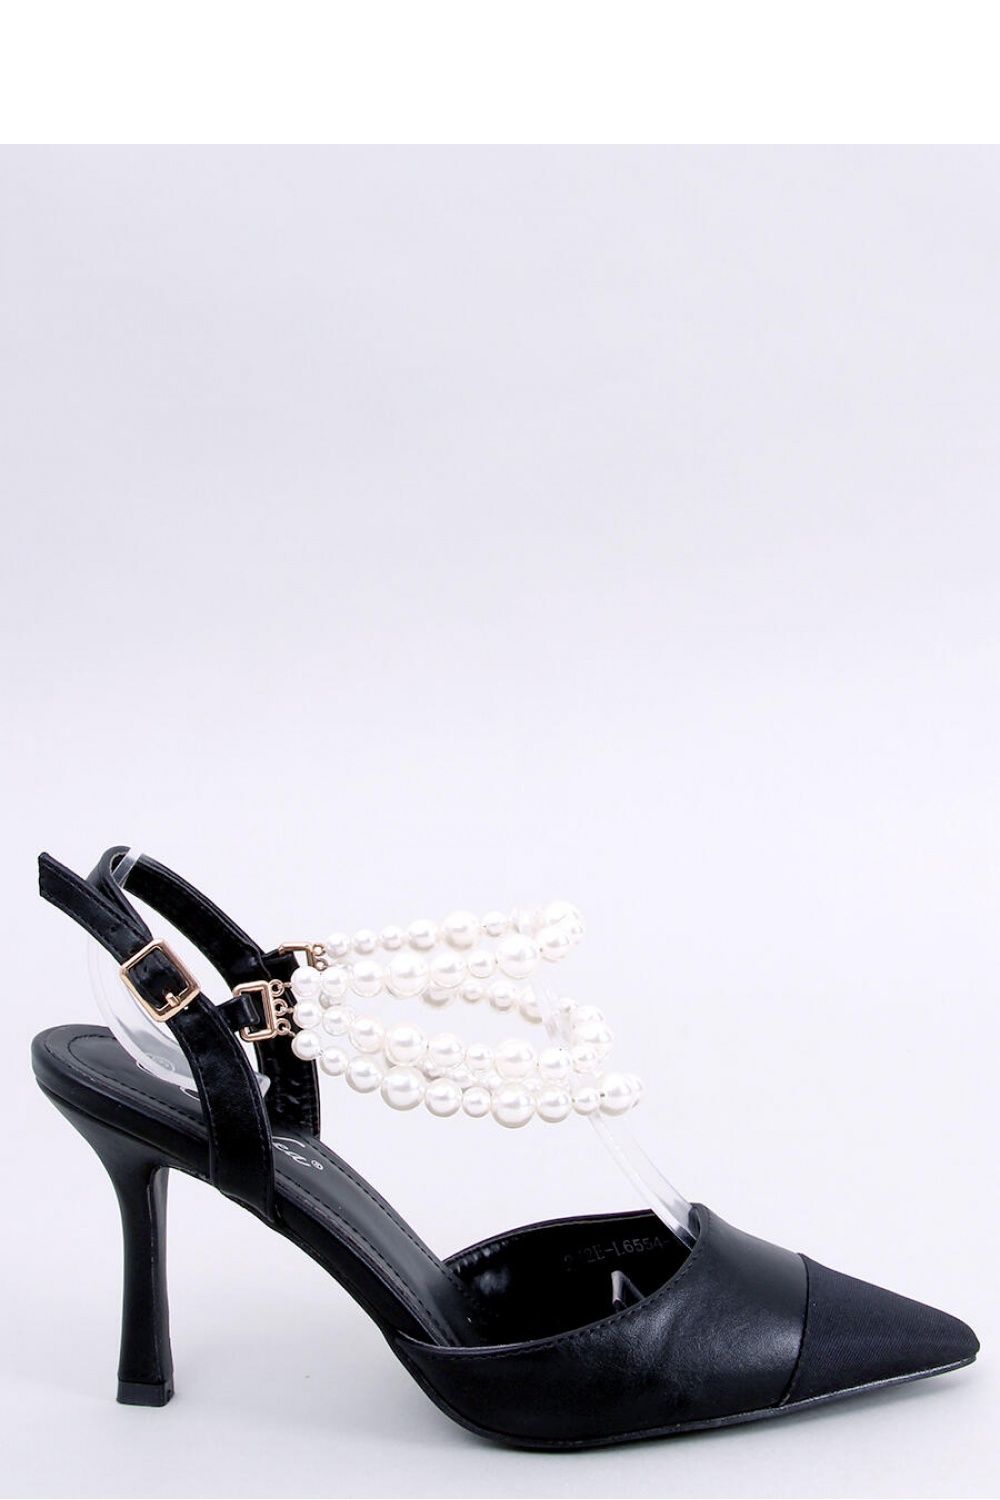 High heels model 180439 Inello